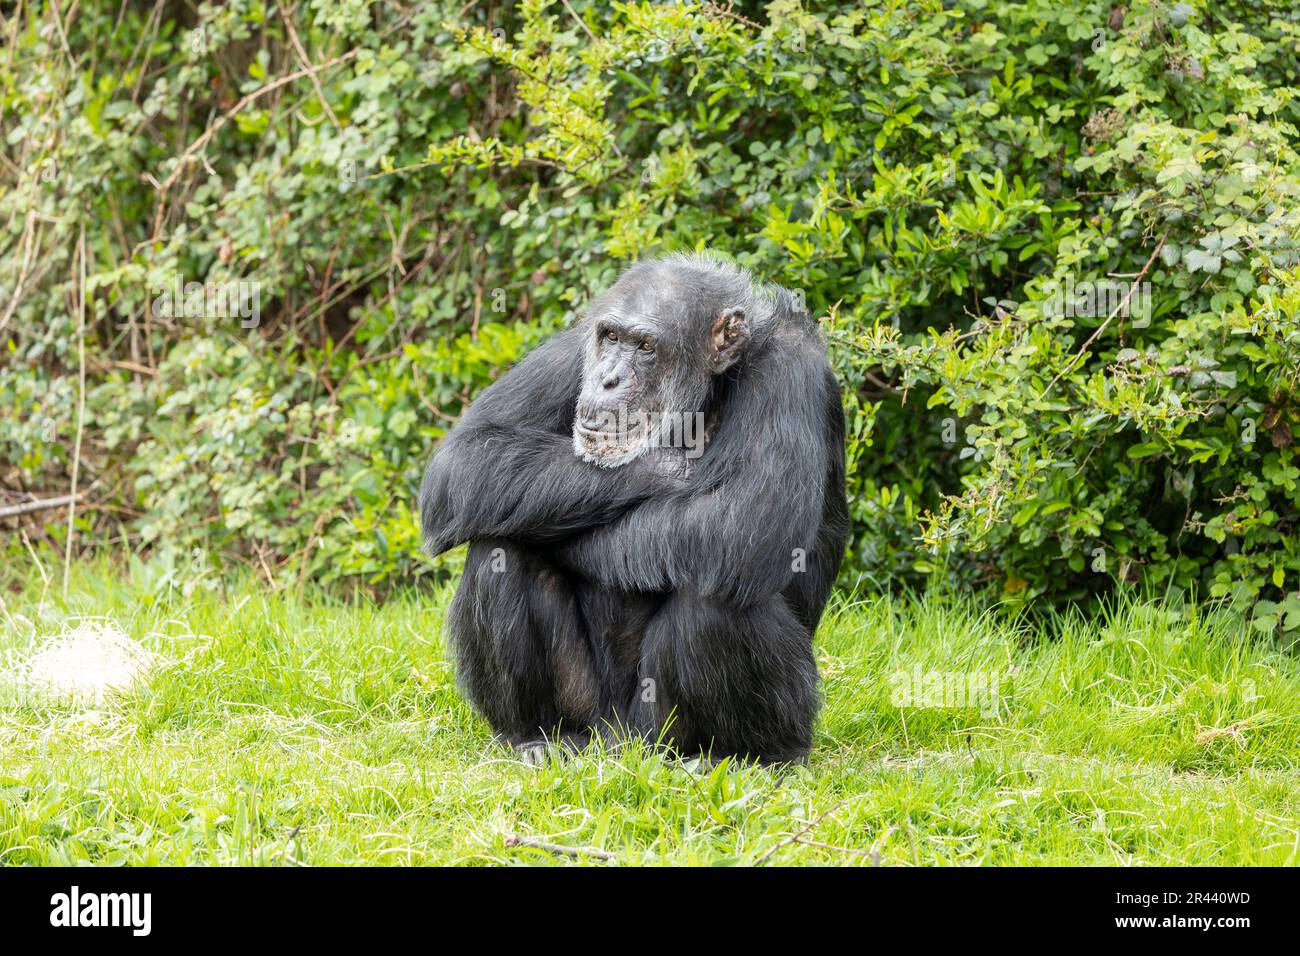 Während er darauf wartete, gefüttert zu werden, saß dieser Gefangene Schimpanse und wartete geduldig, bis das Essen kam. Stockfoto